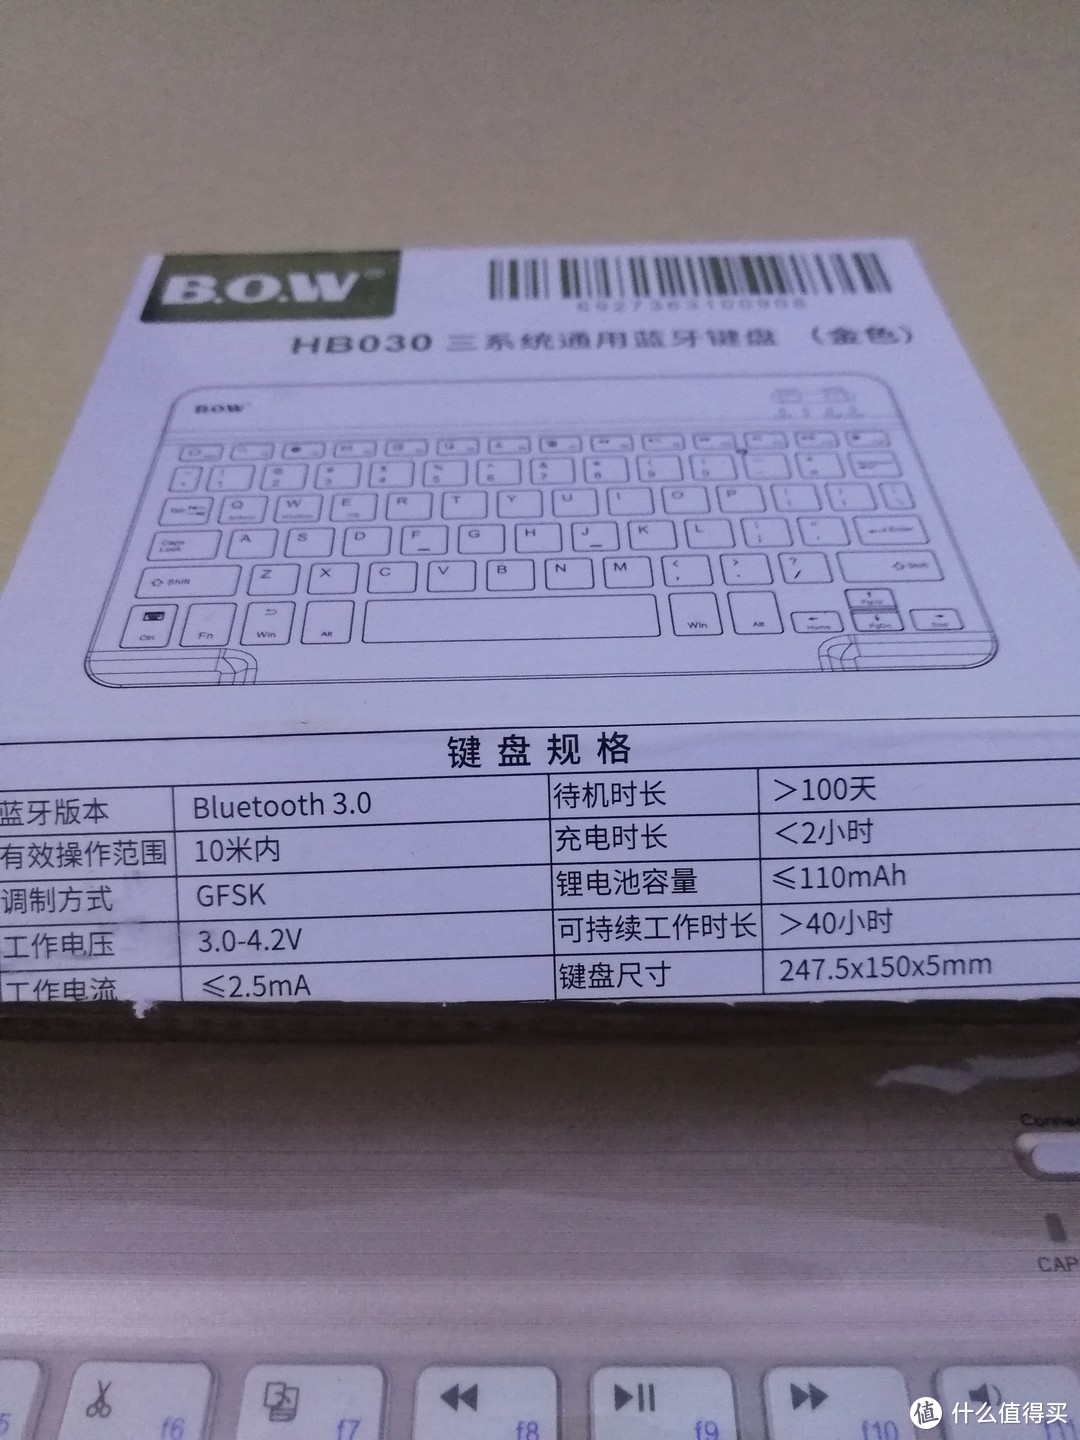 #言出必行#为了张大妈，我买了个蓝牙键盘 — B.O.W 航世 HB030 无线蓝牙键盘